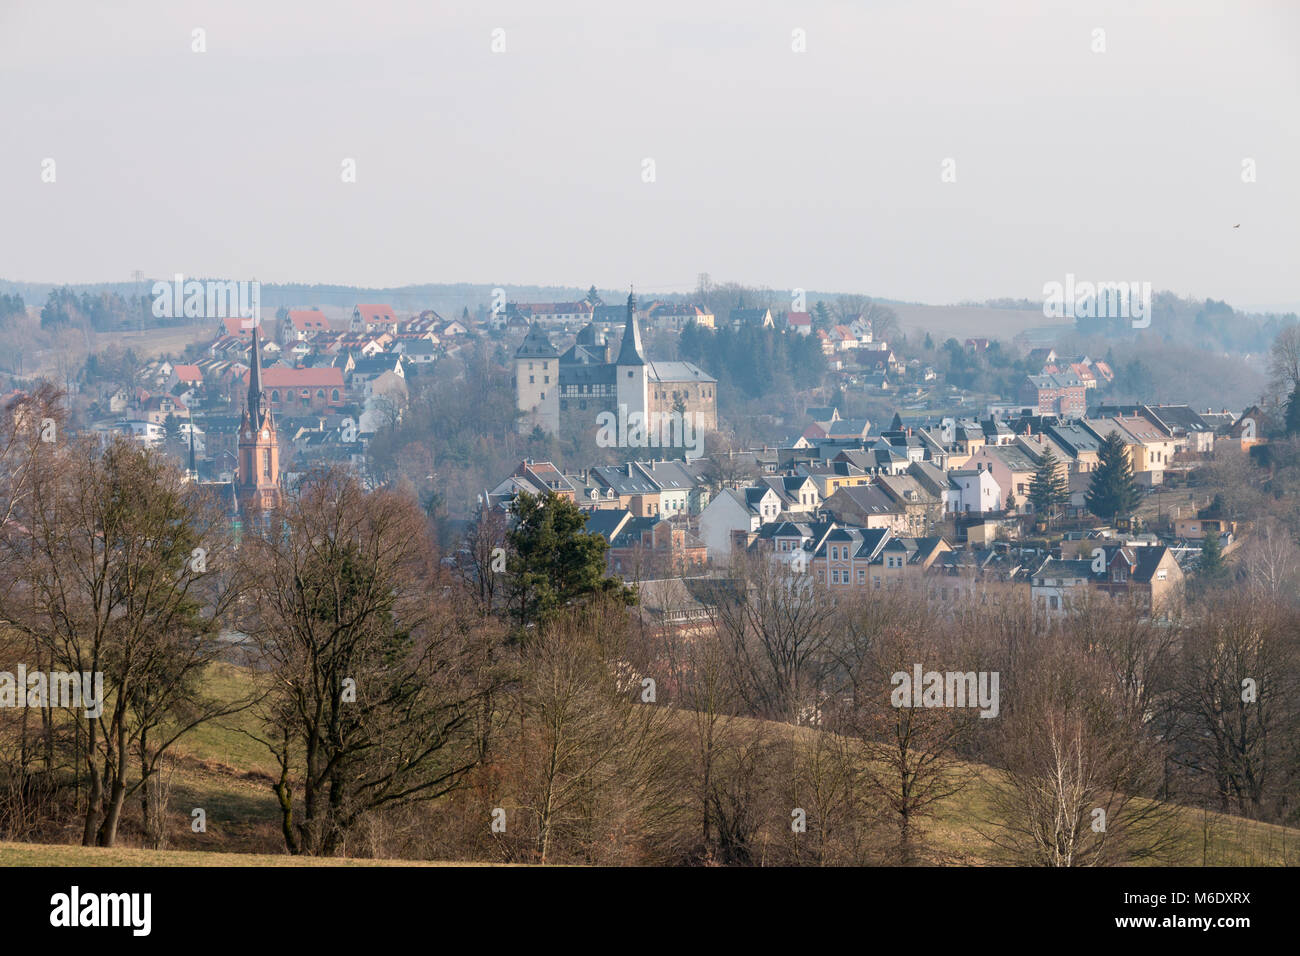 Vista del piccolo villaggio Mylau in Turingia, Germania. Foto Stock